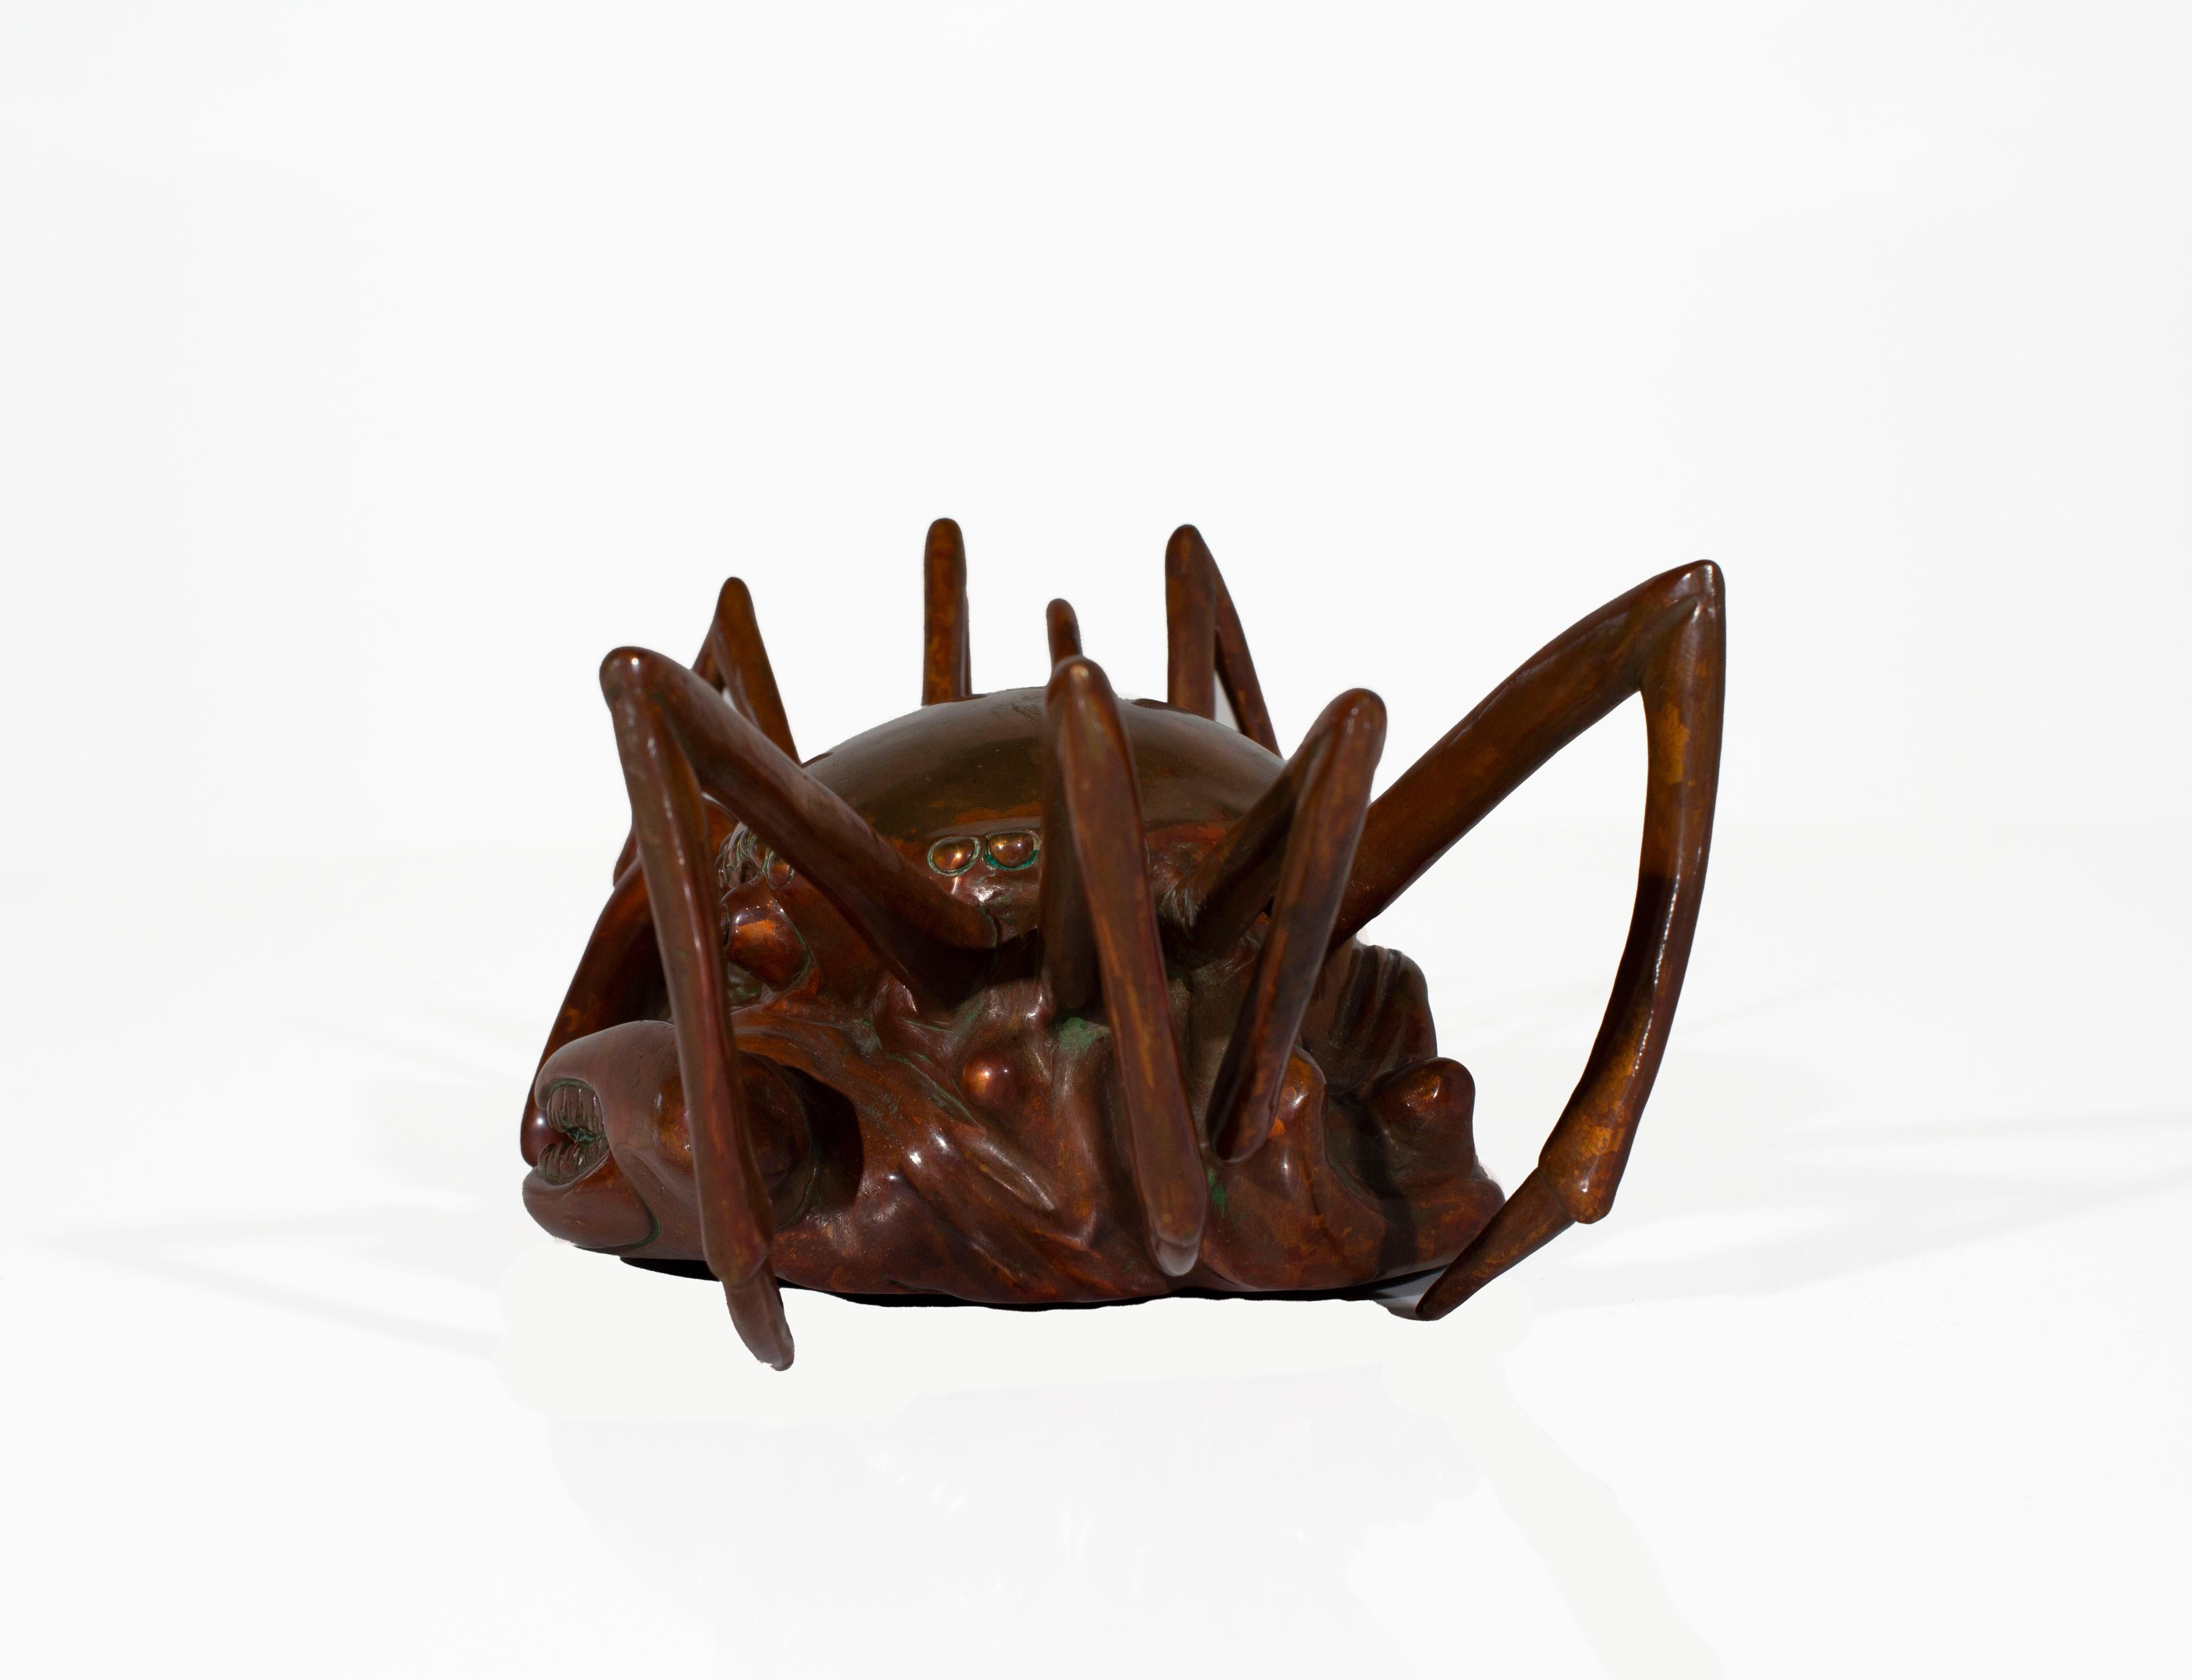 Crab paperweight

Vintage metal crab paperweight.